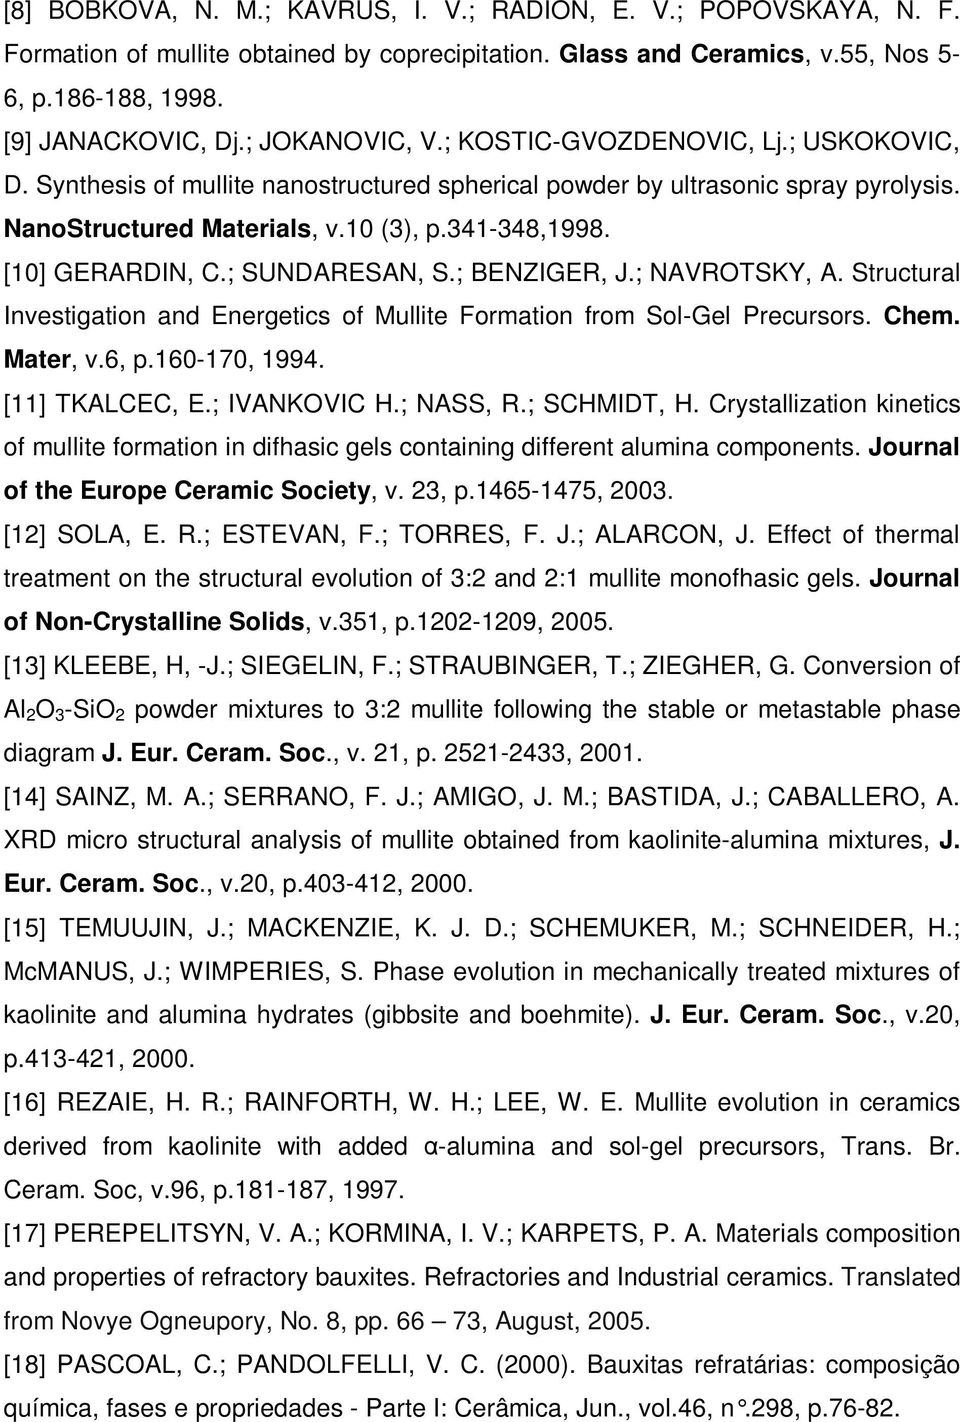 [10] GERARDIN, C.; SUNDARESAN, S.; BENZIGER, J.; NAVROTSKY, A. Structural Investigation and Energetics of Mullite Formation from Sol-Gel Precursors. Chem. Mater, v.6, p.160-170, 1994. [11] TKALCEC, E.